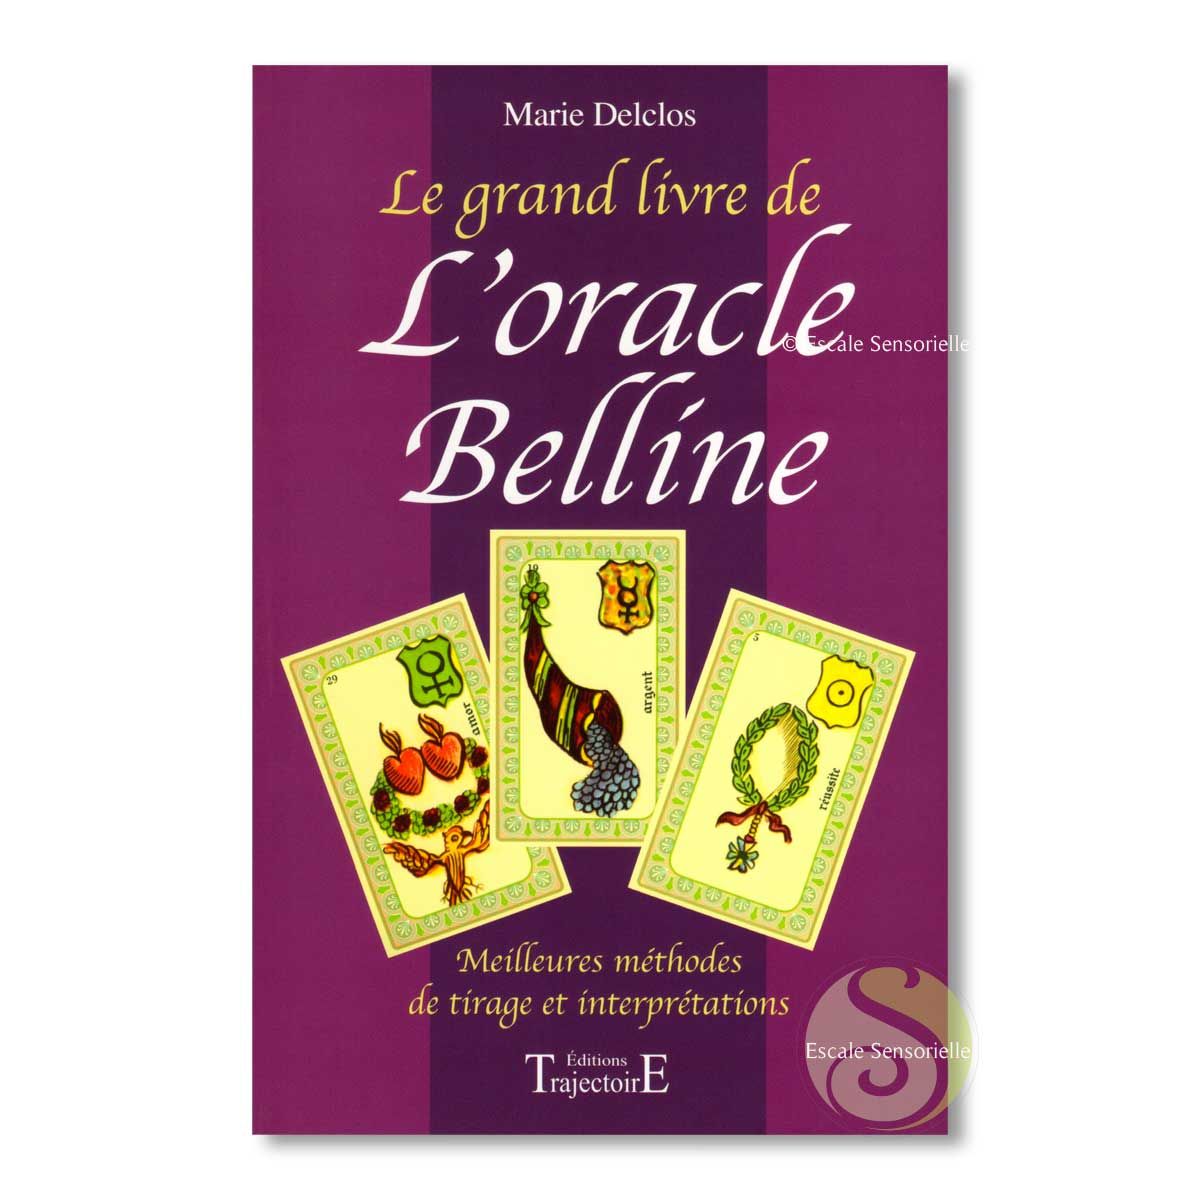 Le grand livre de l'oracle de Belline Marie Delclos éditions